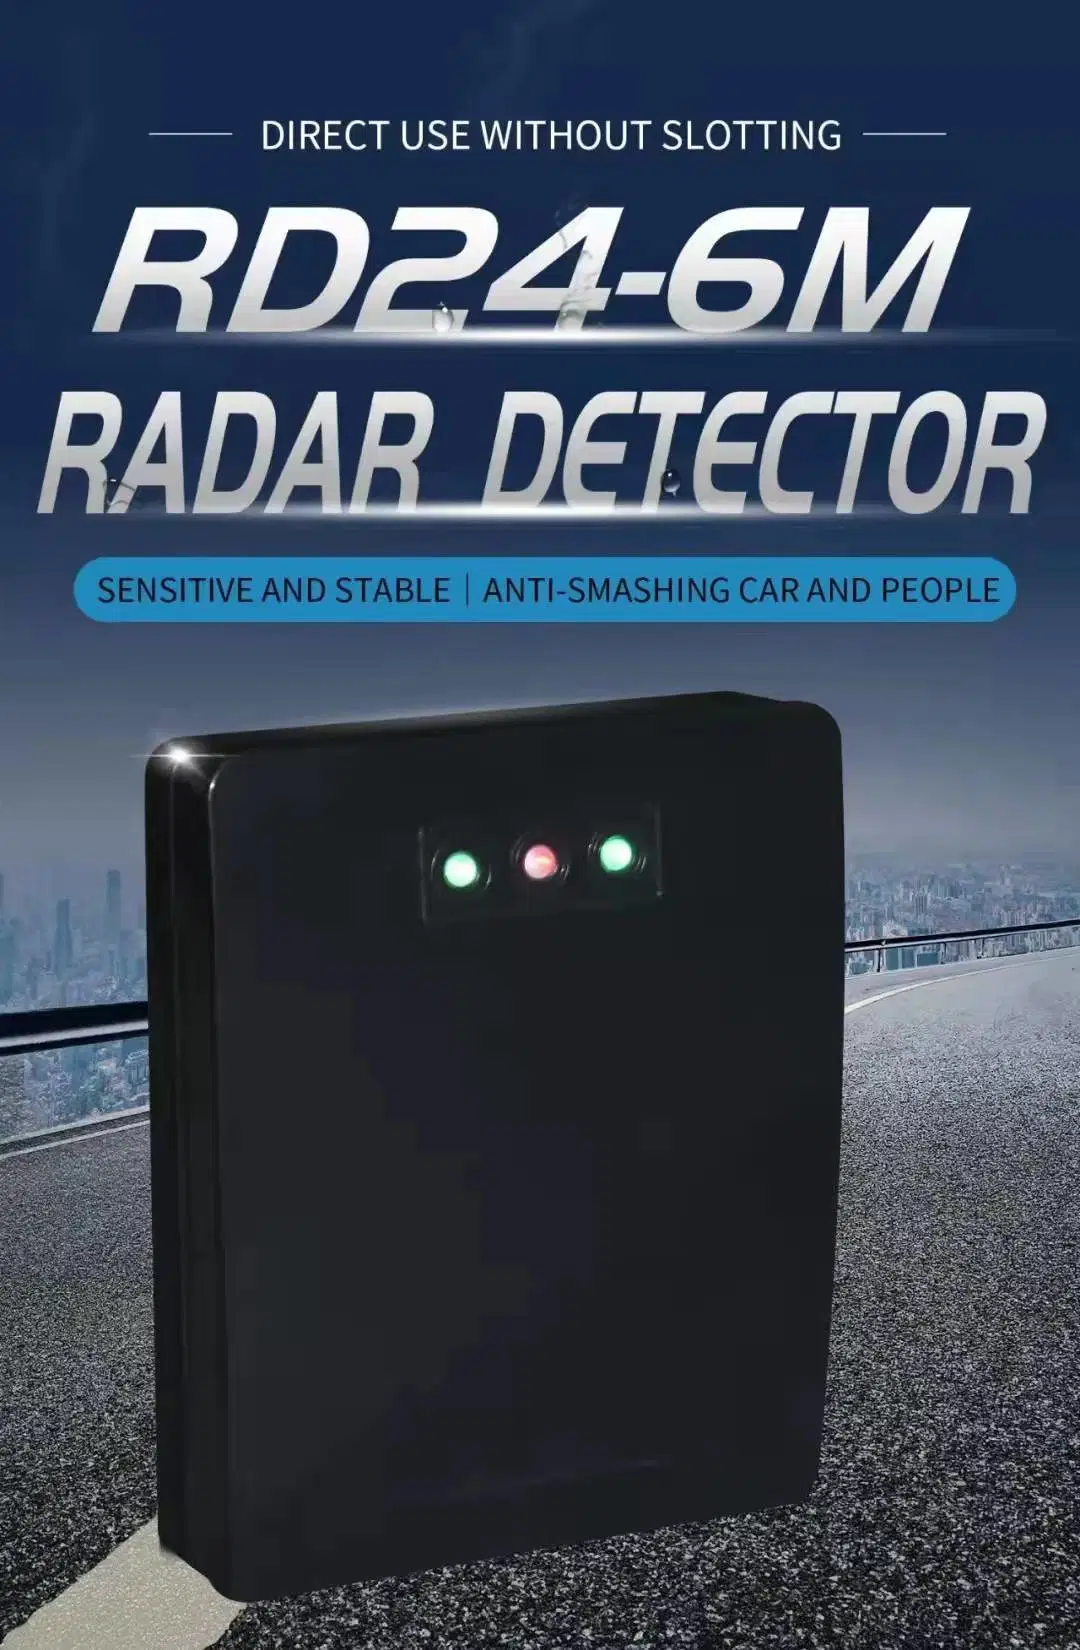 Radarsondensensor zur Erkennung von Personen und Autos am Fahrzeug Elektronisches Tor